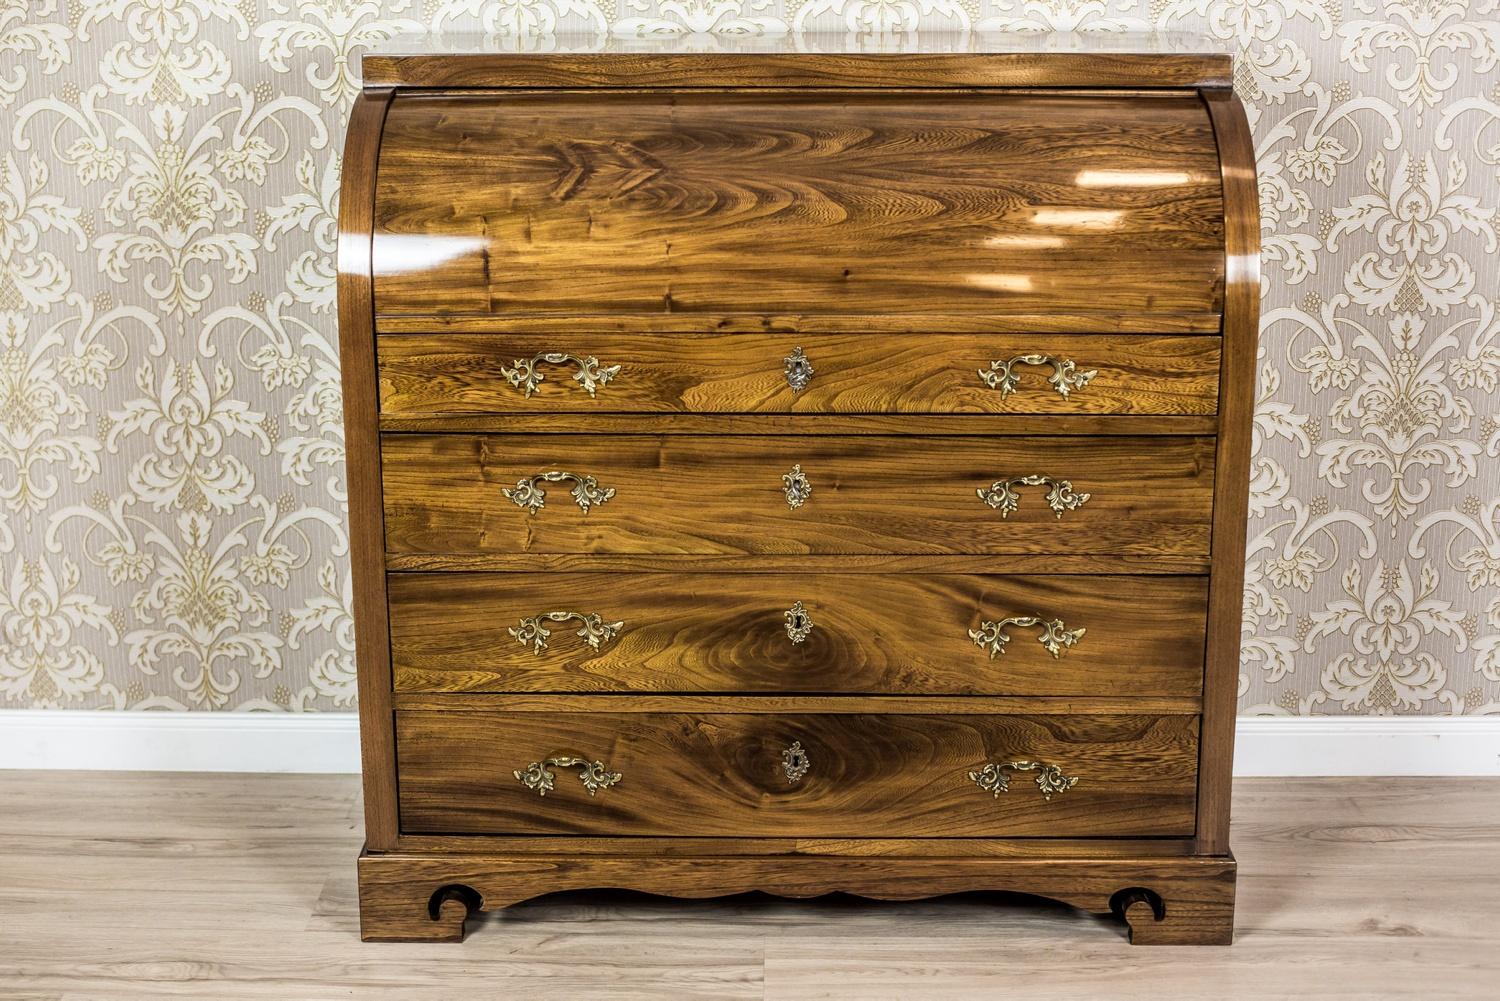 Wir präsentieren Ihnen dieses Möbelstück aus massivem Ulmenholz mit einer schönen Maserung, um 1840.
In der Kommode befinden sich vier Schubladen und ein zylindrisch geschlossener Deckel; sie steht auf einem separaten Sockel.
Die obere Schublade